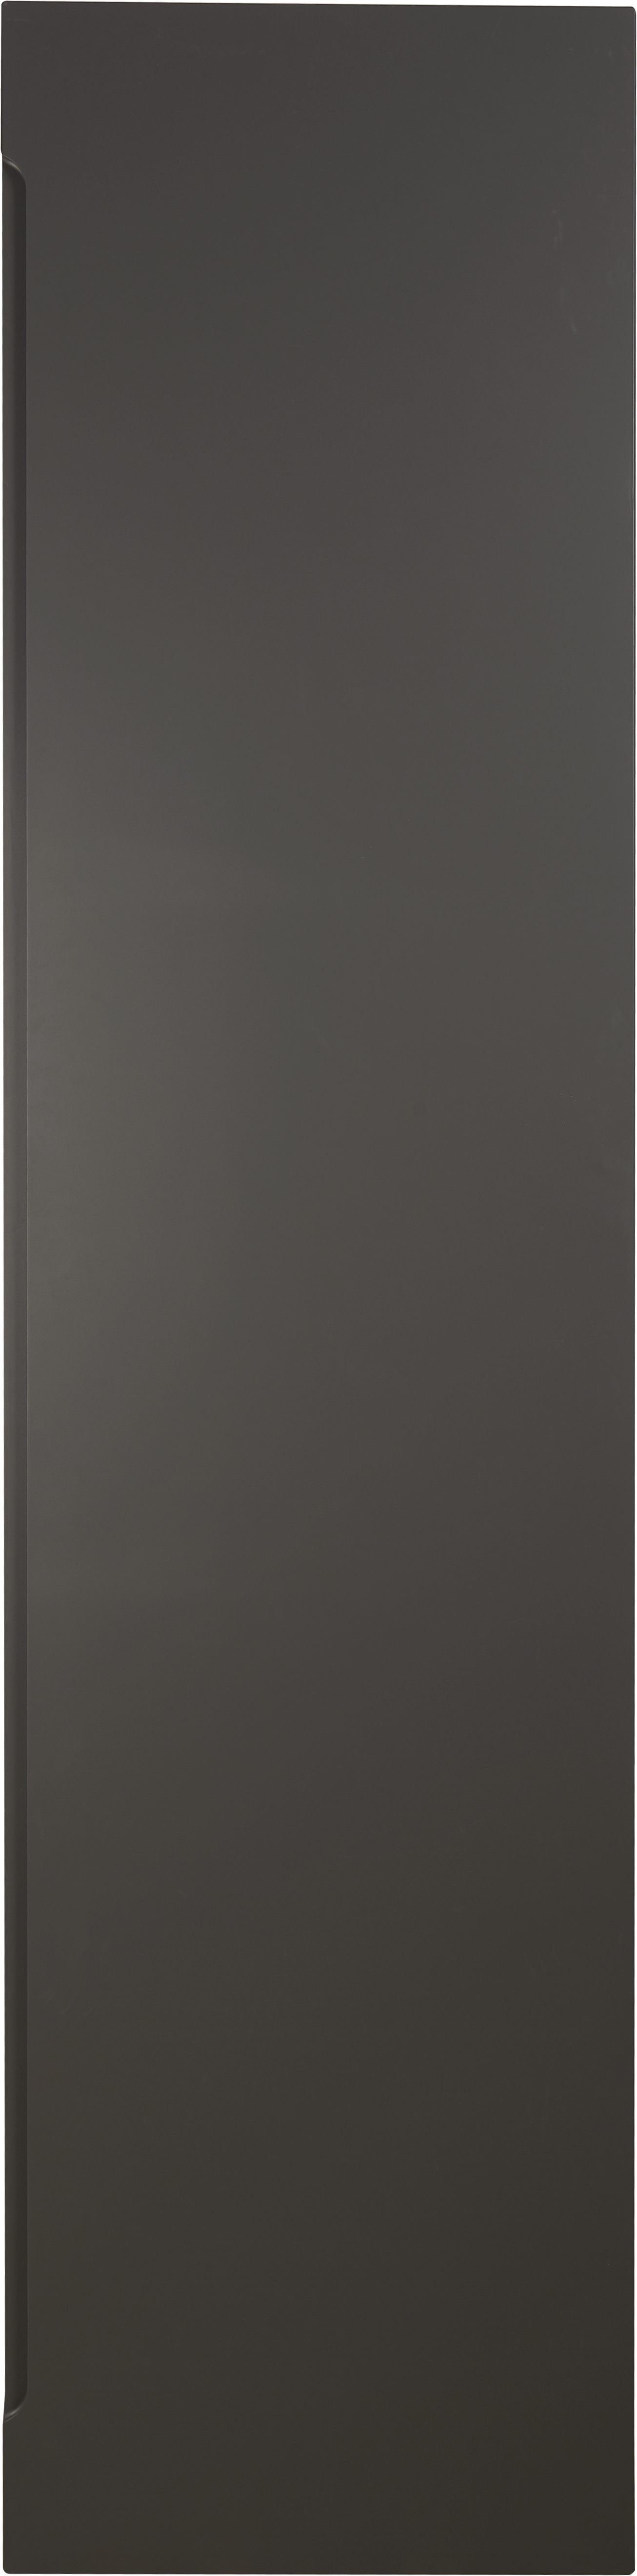 Puerta abatible para armario osaka gris oscuro 60x240x1,9 cm